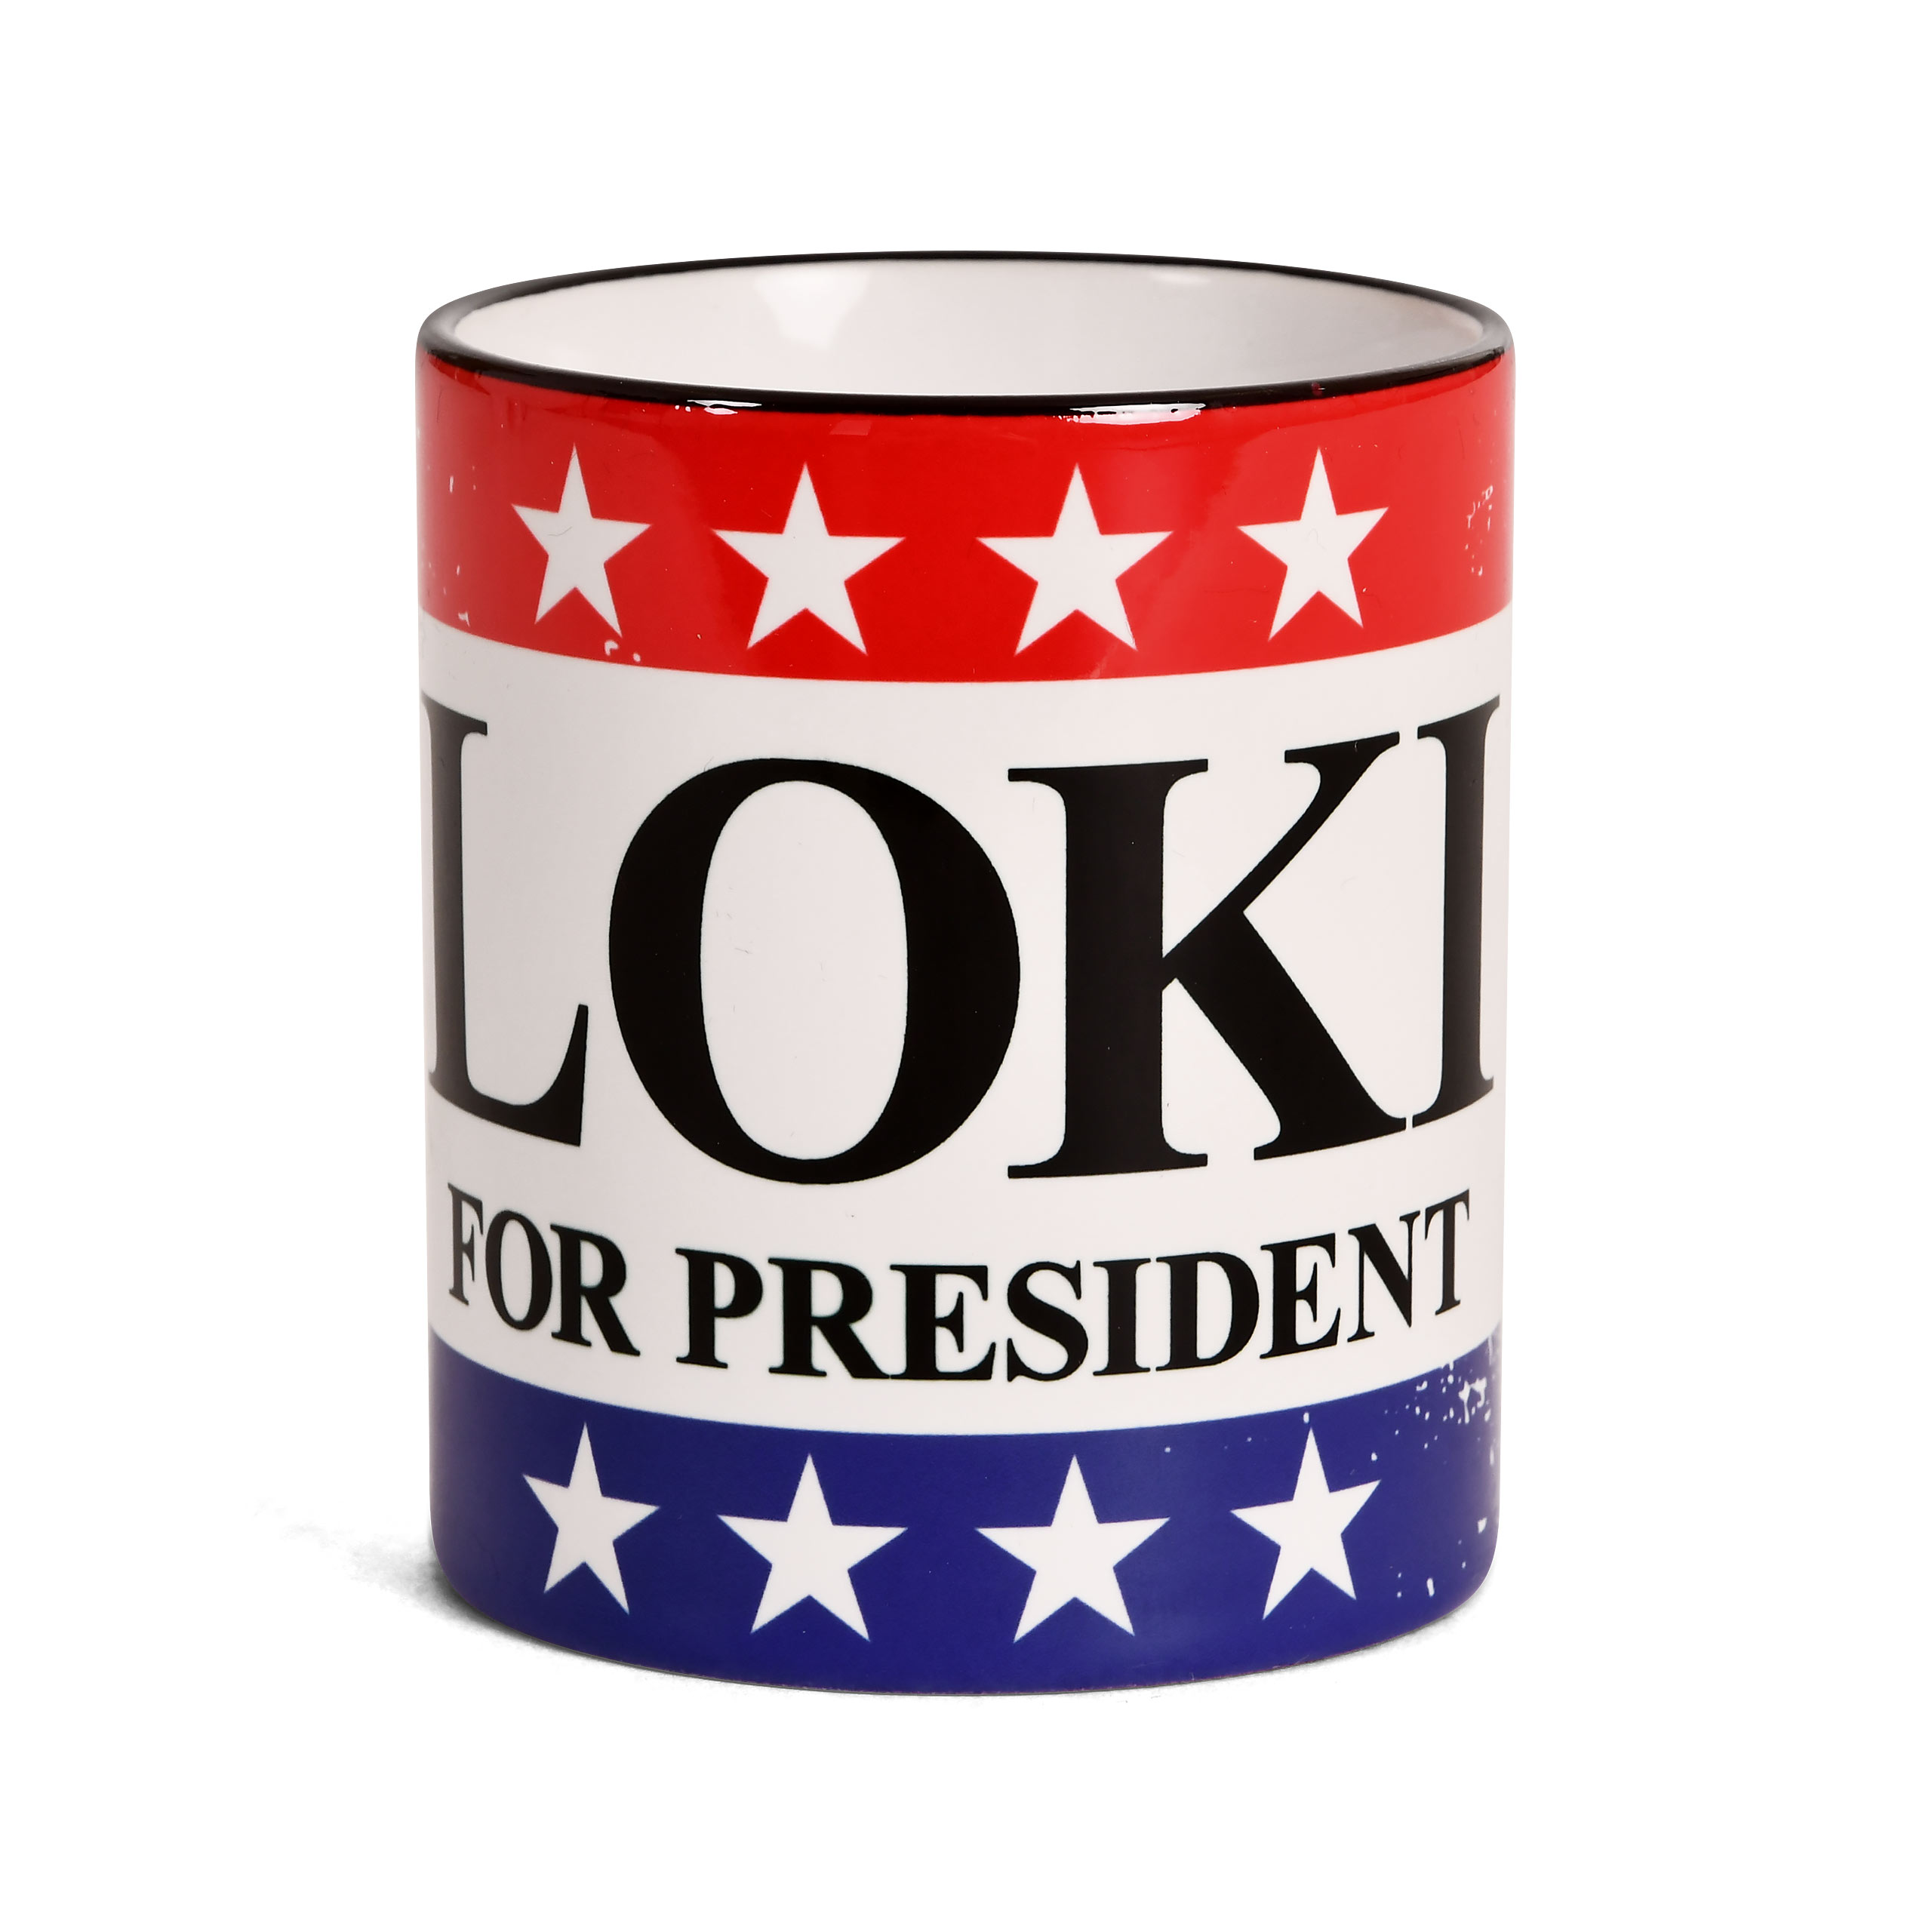 For President Mug for Loki Fans